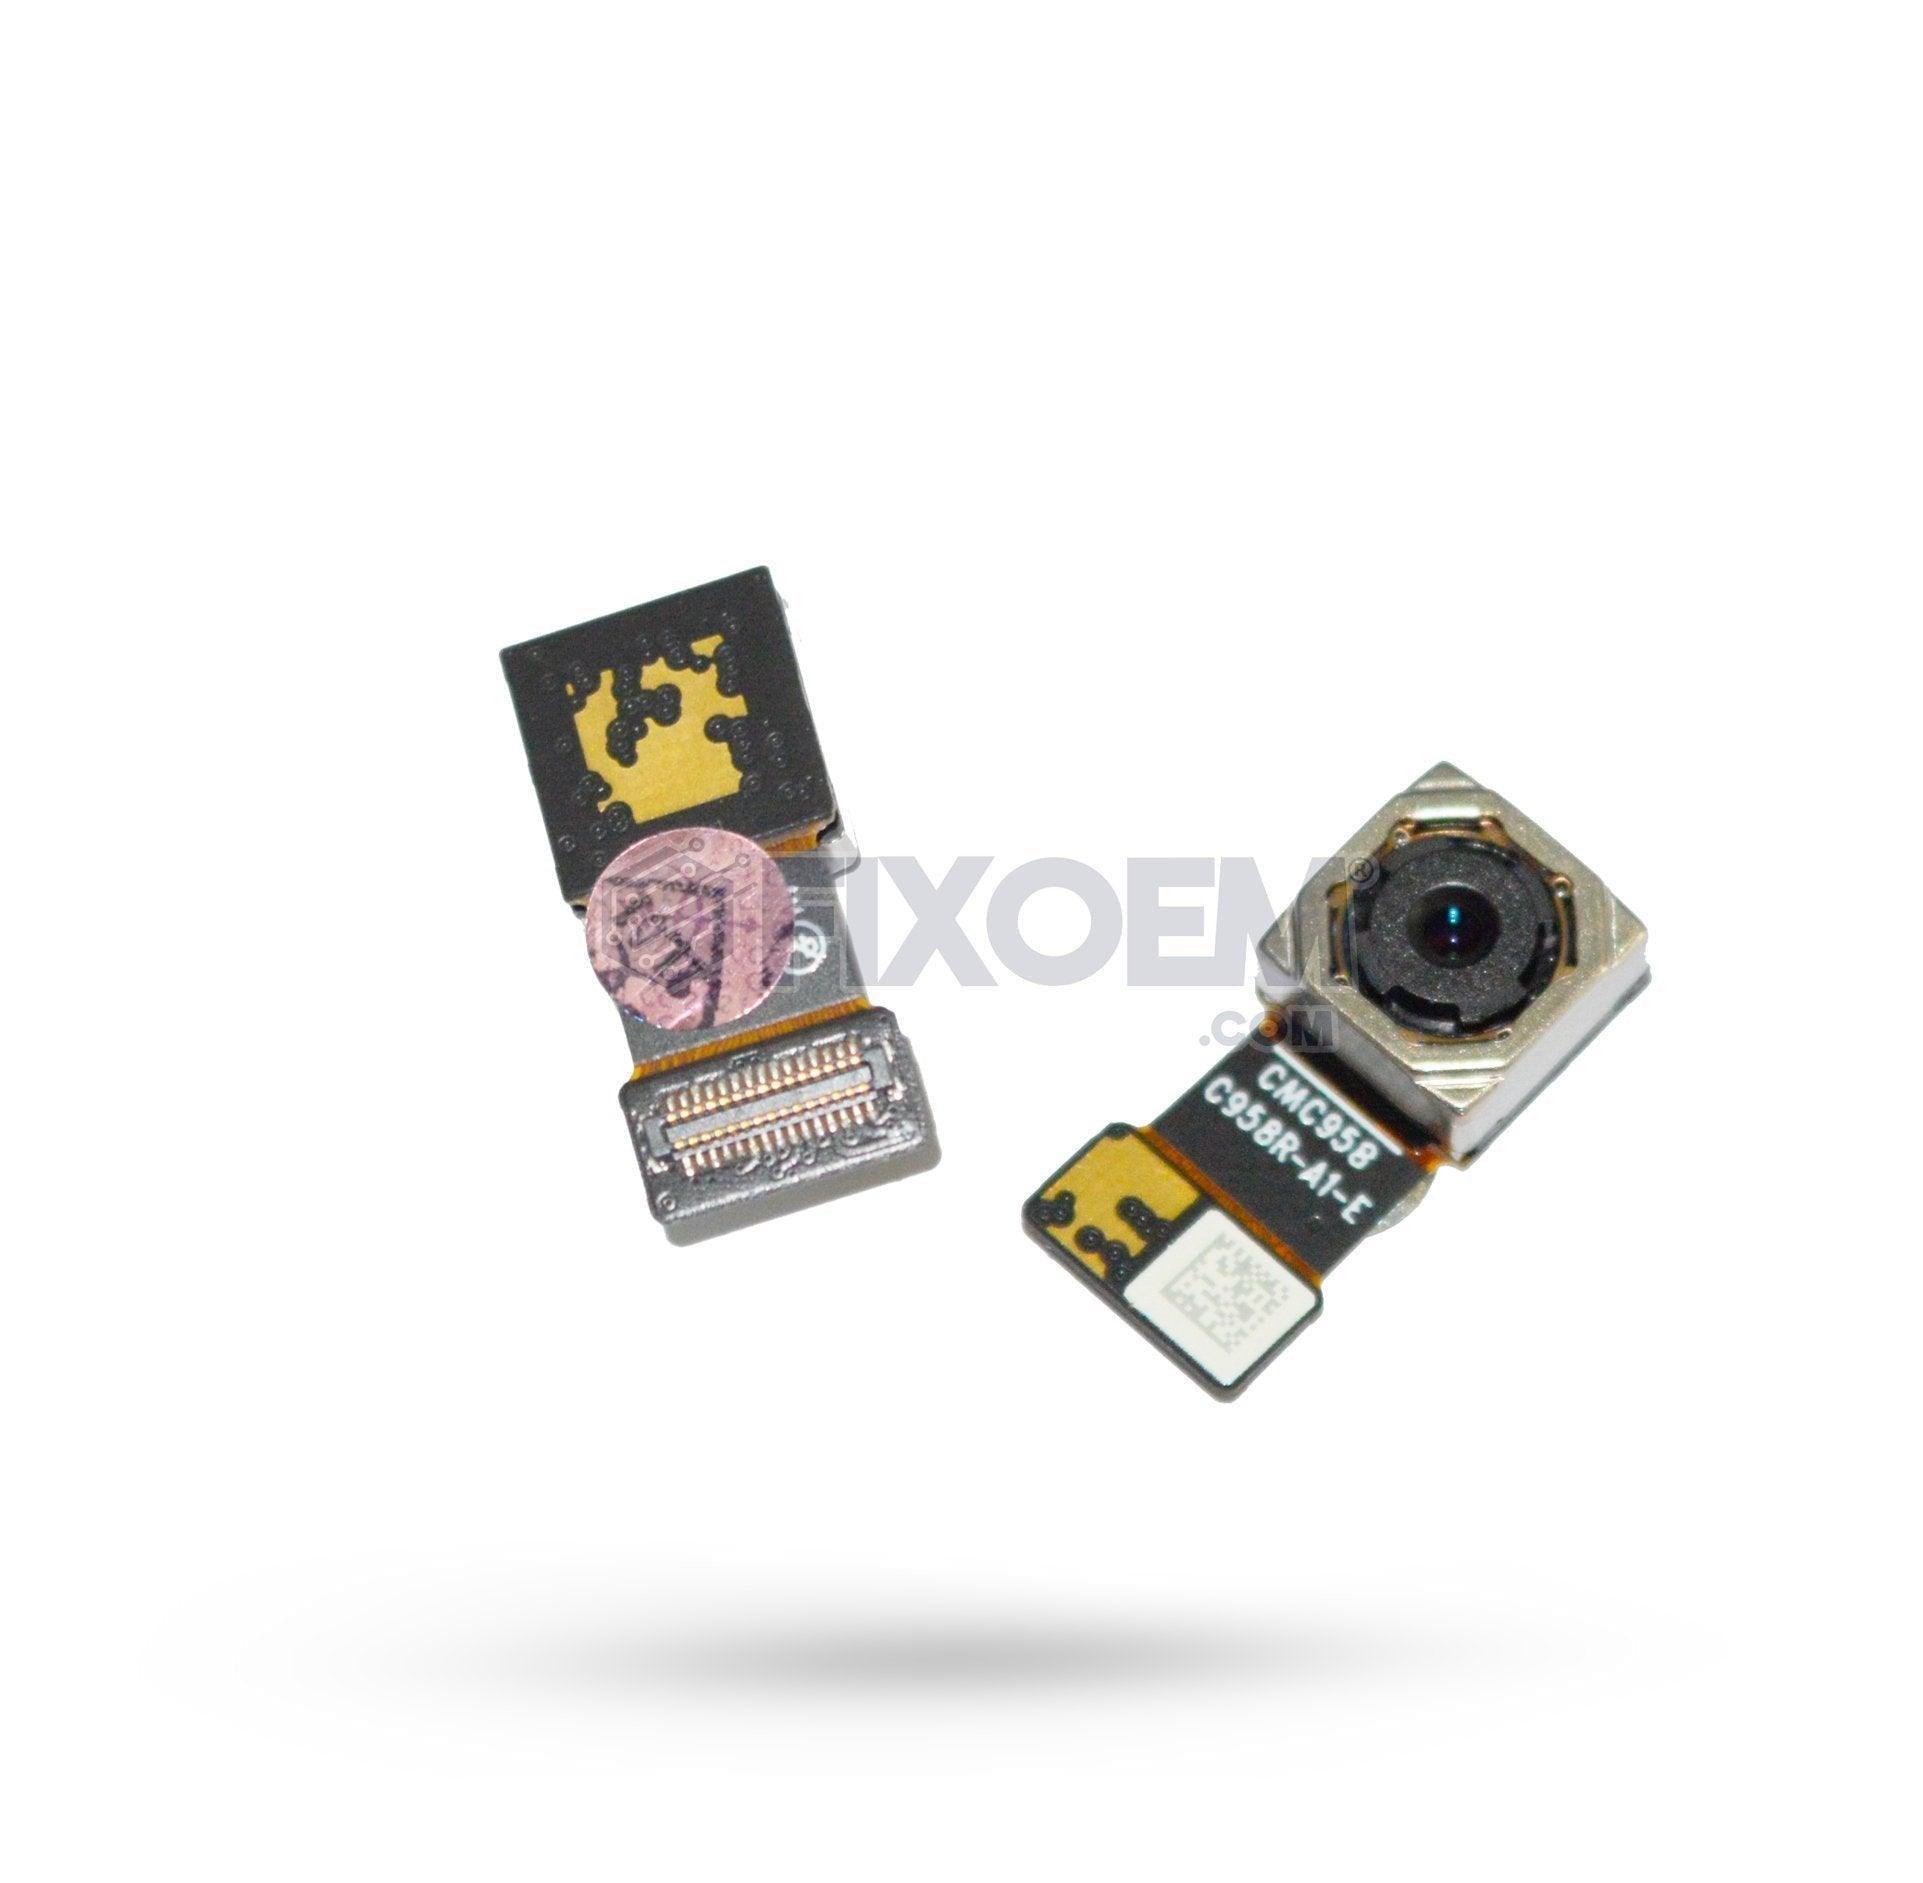 Camara Trasera Moto E5 / G6 Play Cmc958 Xt1952 Xt1922 |+2,000 reseñas 4.8/5 ⭐